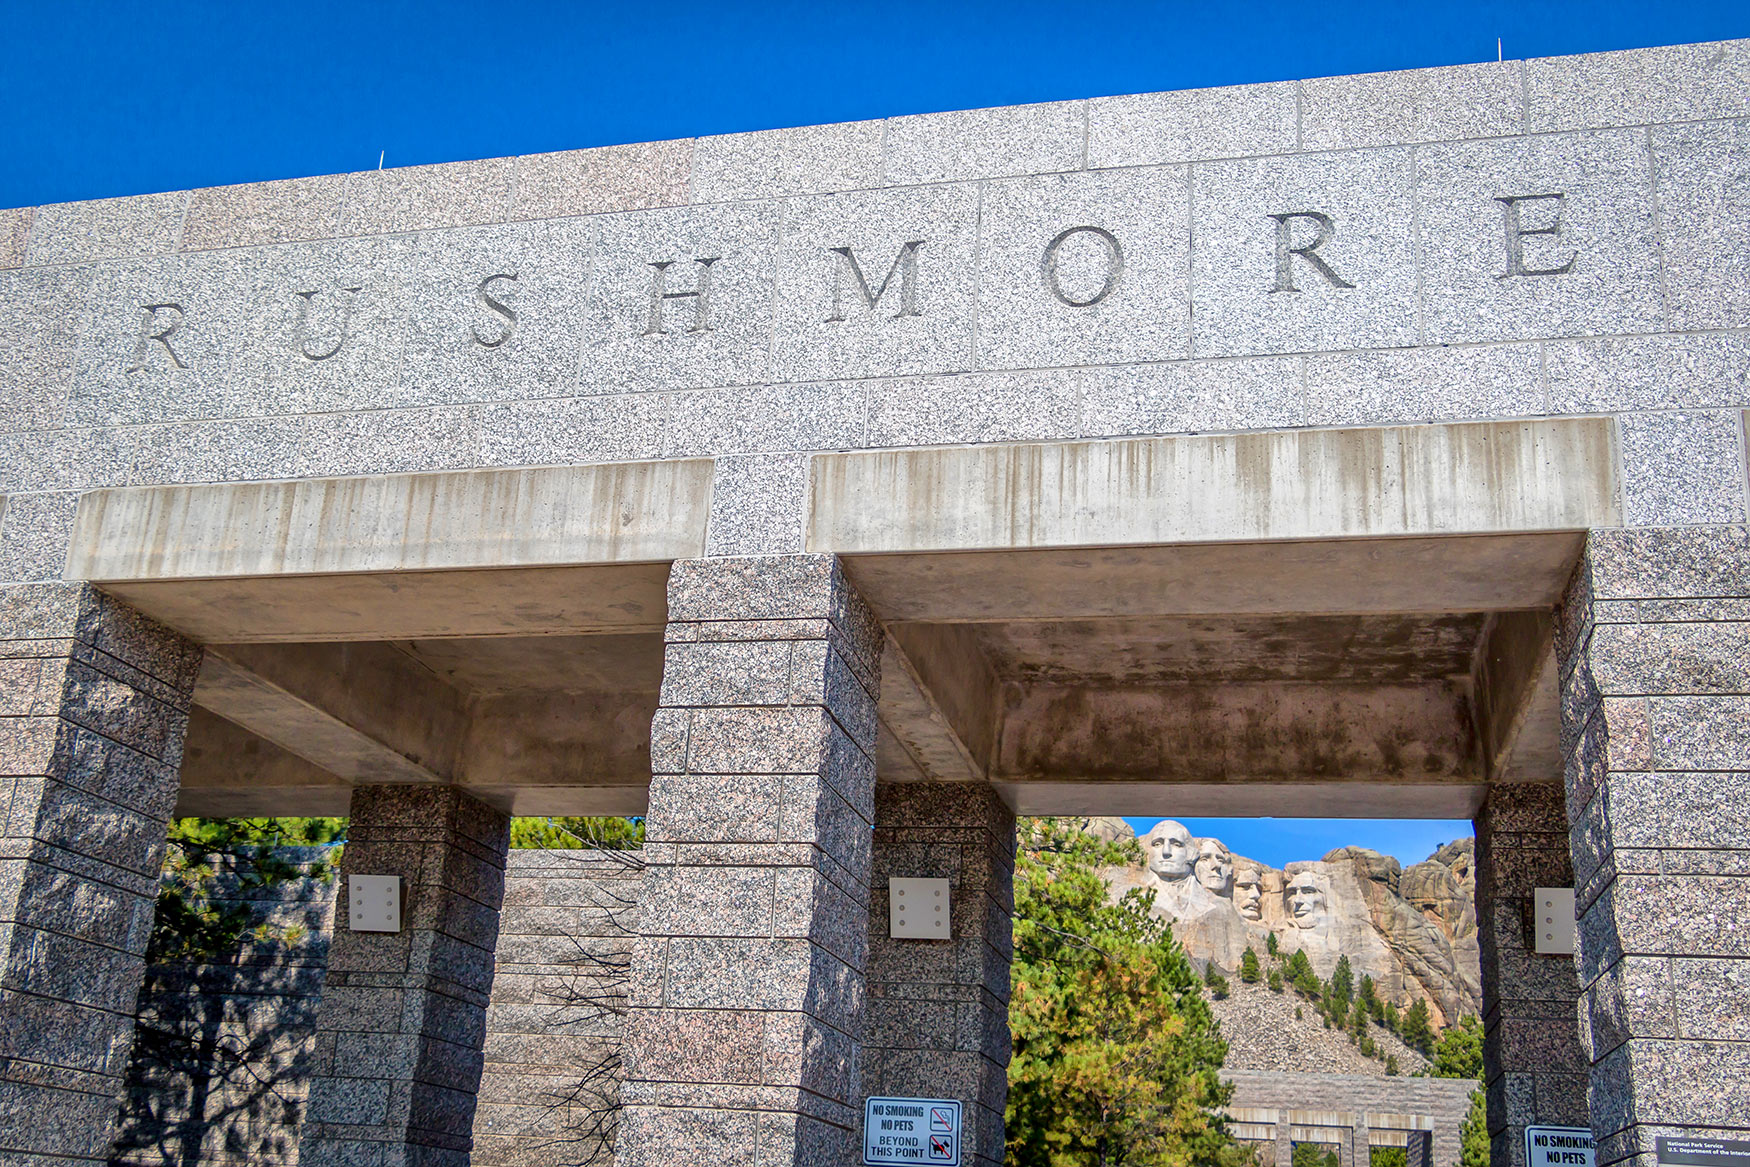 Entree van het Mount Rushmore monument in South Dakota